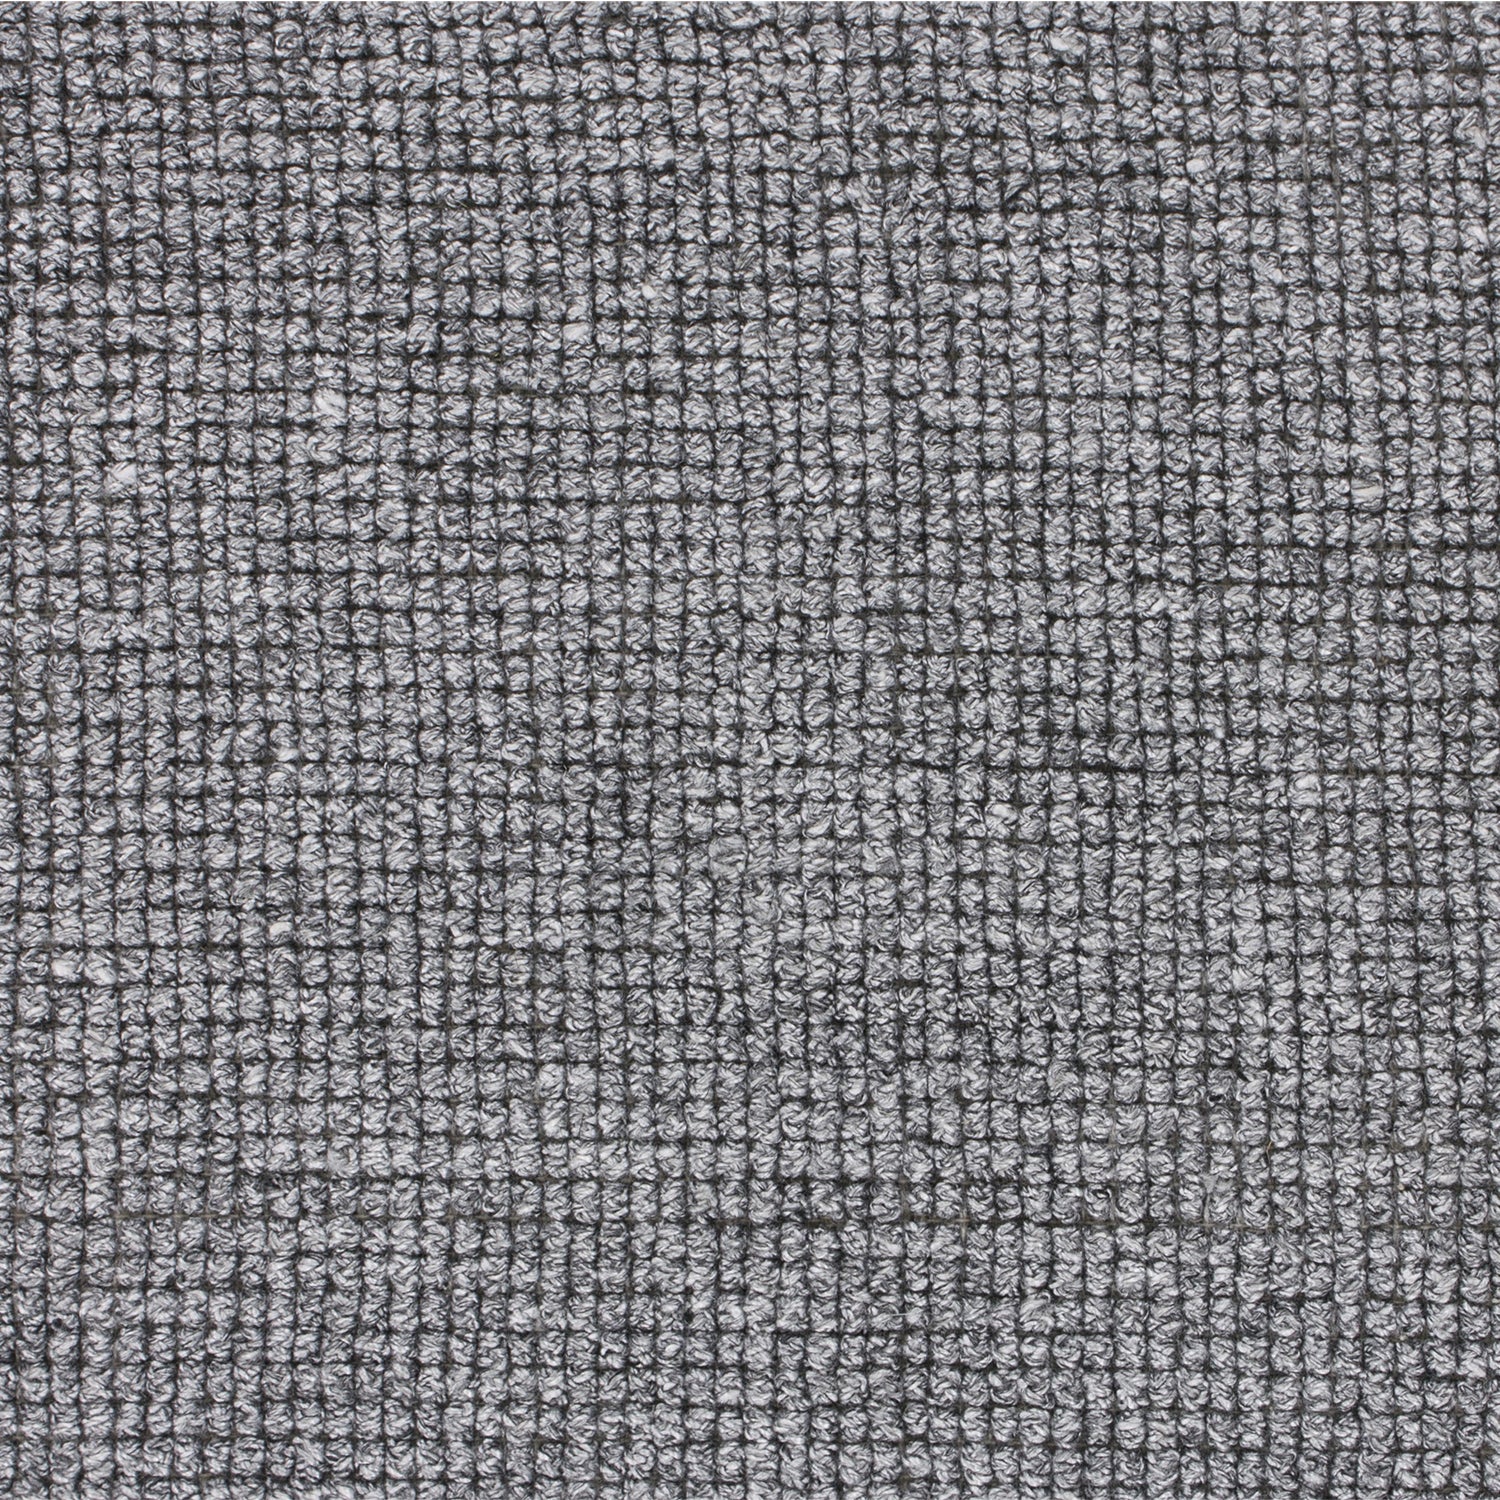 Wool-blend broadloom carpet swatch in a looped weave in mottled gray.